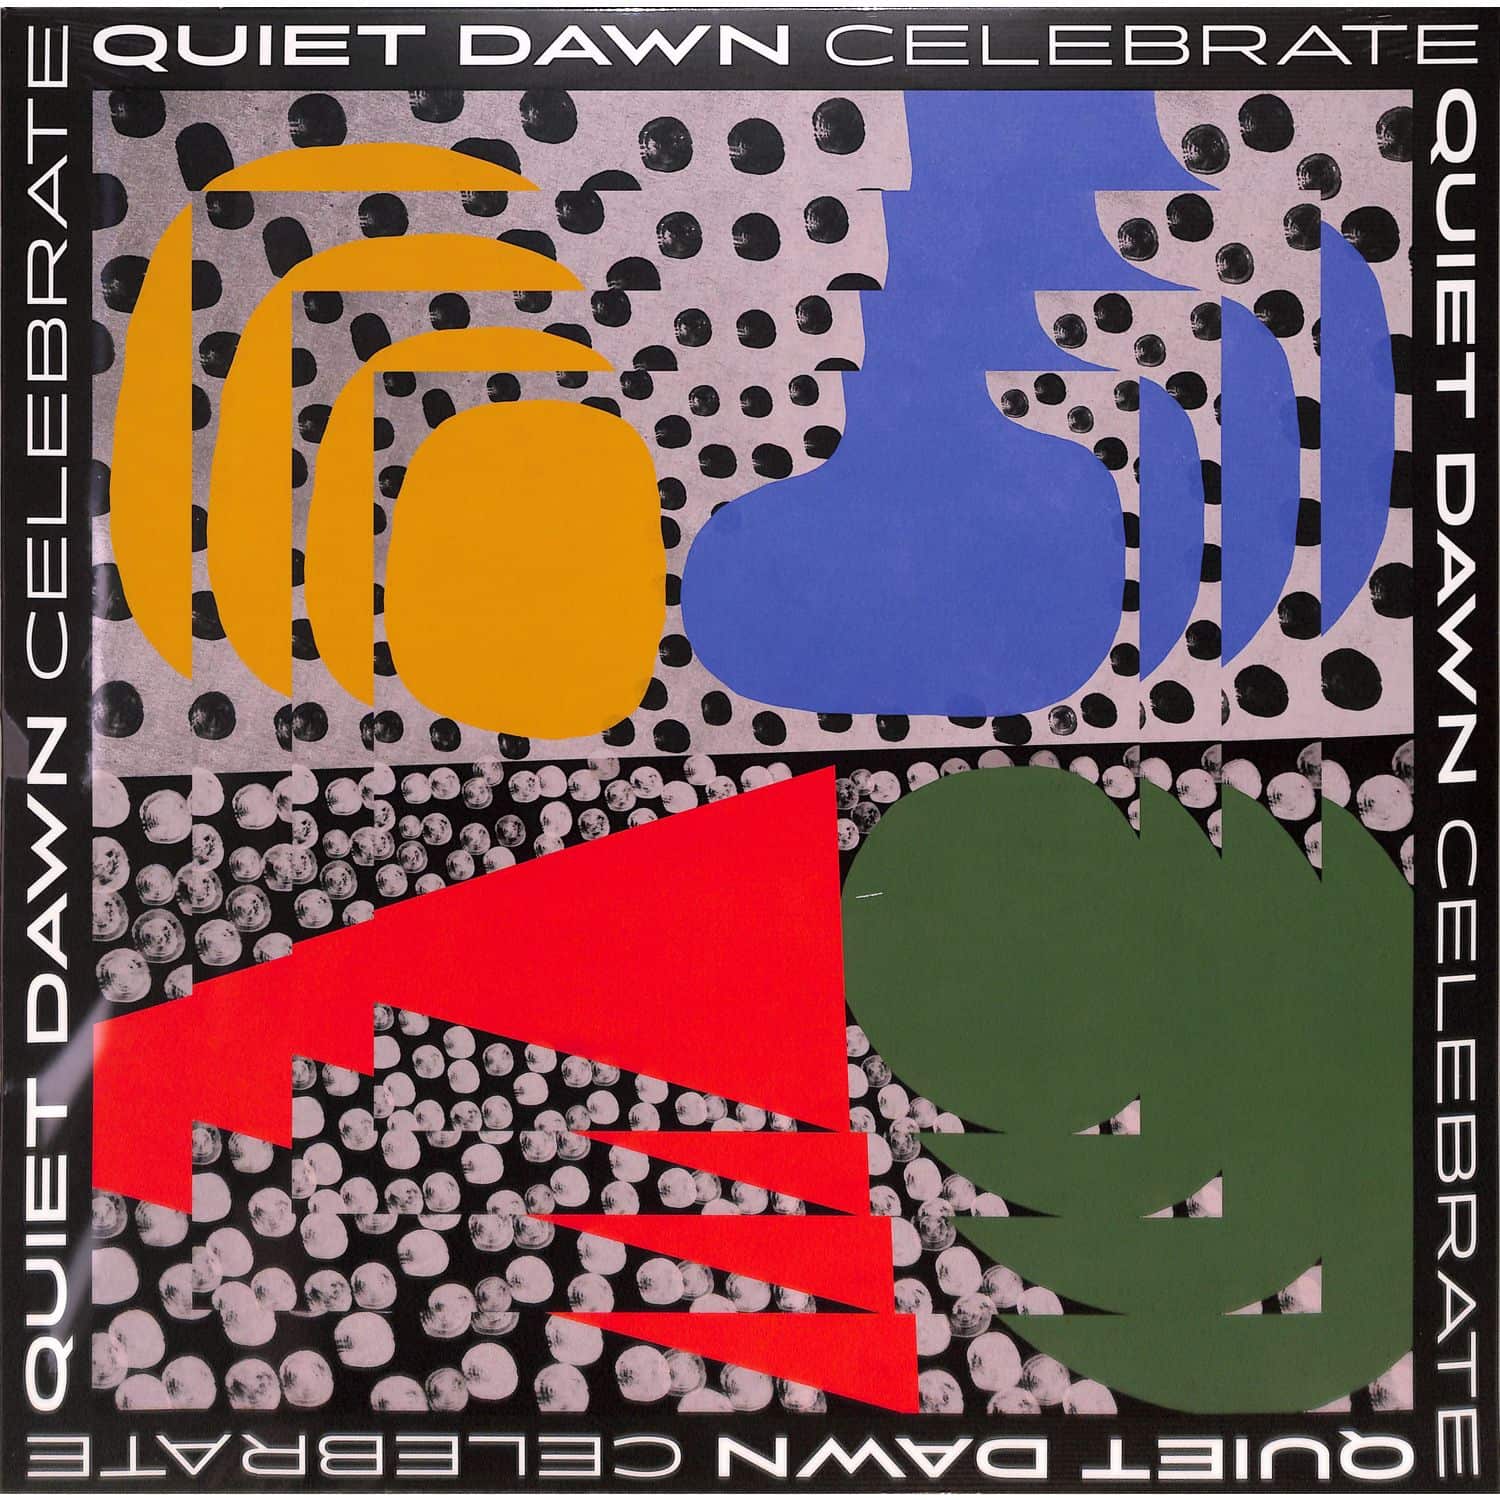 Quiet Dawn - CELEBRATE 